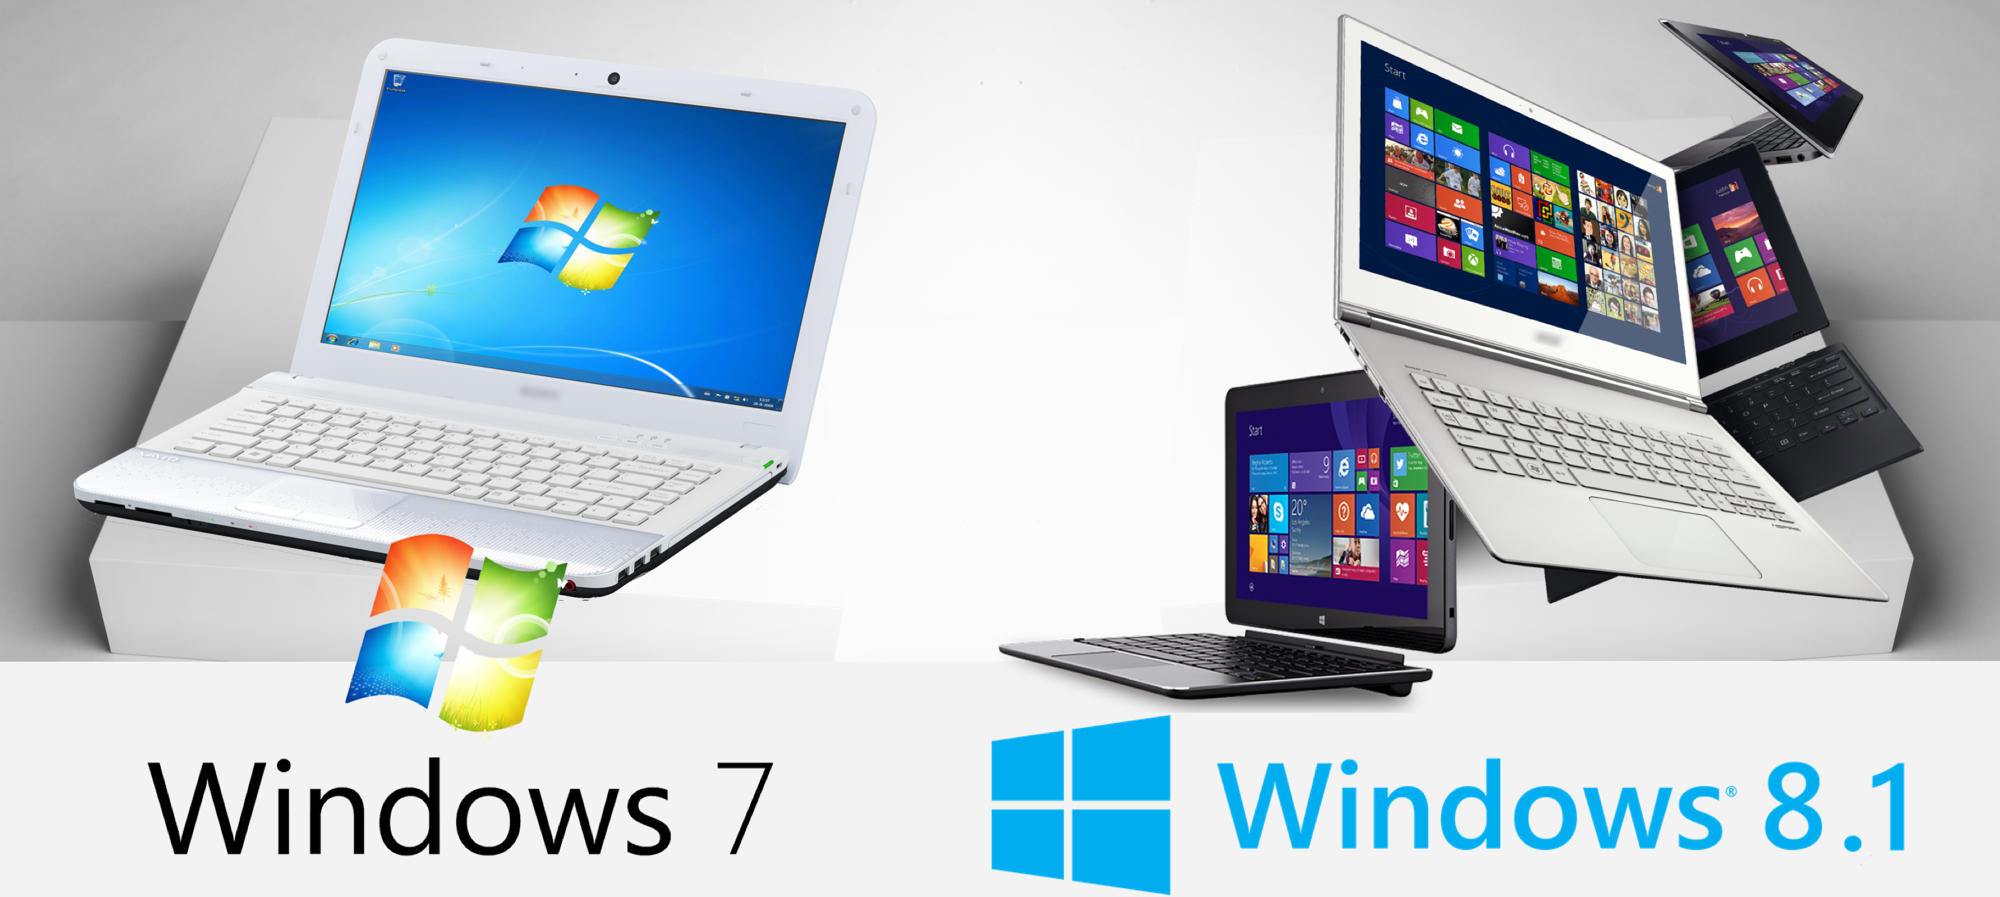 Bitdefender bietet weiterhin Antimalware-Support für Windows 7 und Windows 8.1